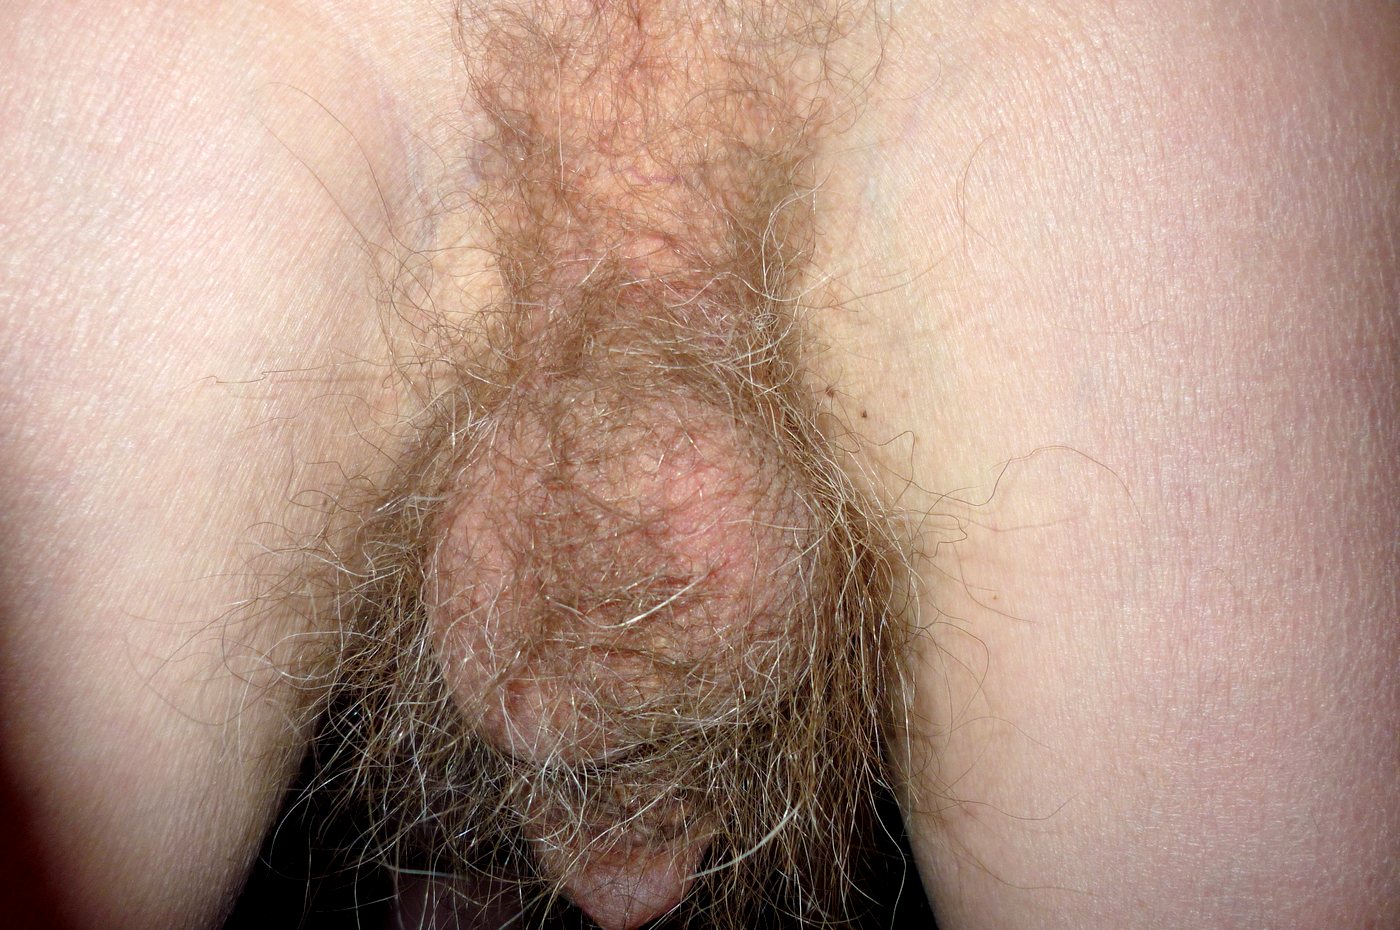 волосы на члене у мужчины фото 6